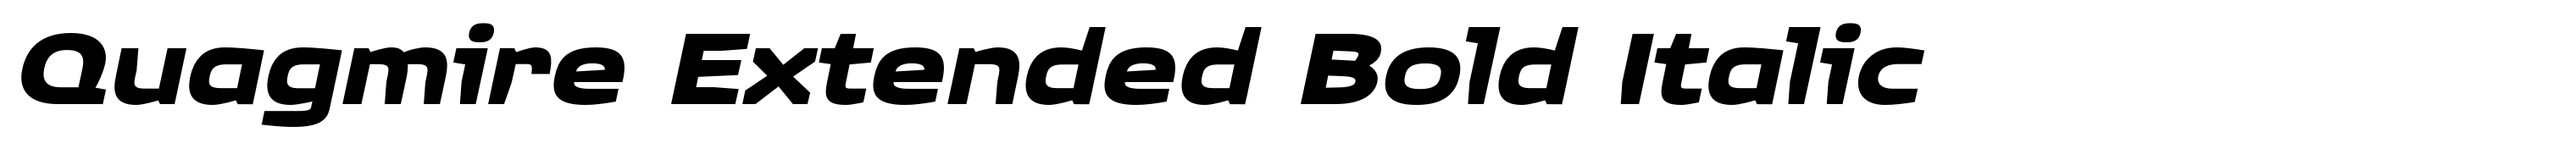 Quagmire Extended Bold Italic